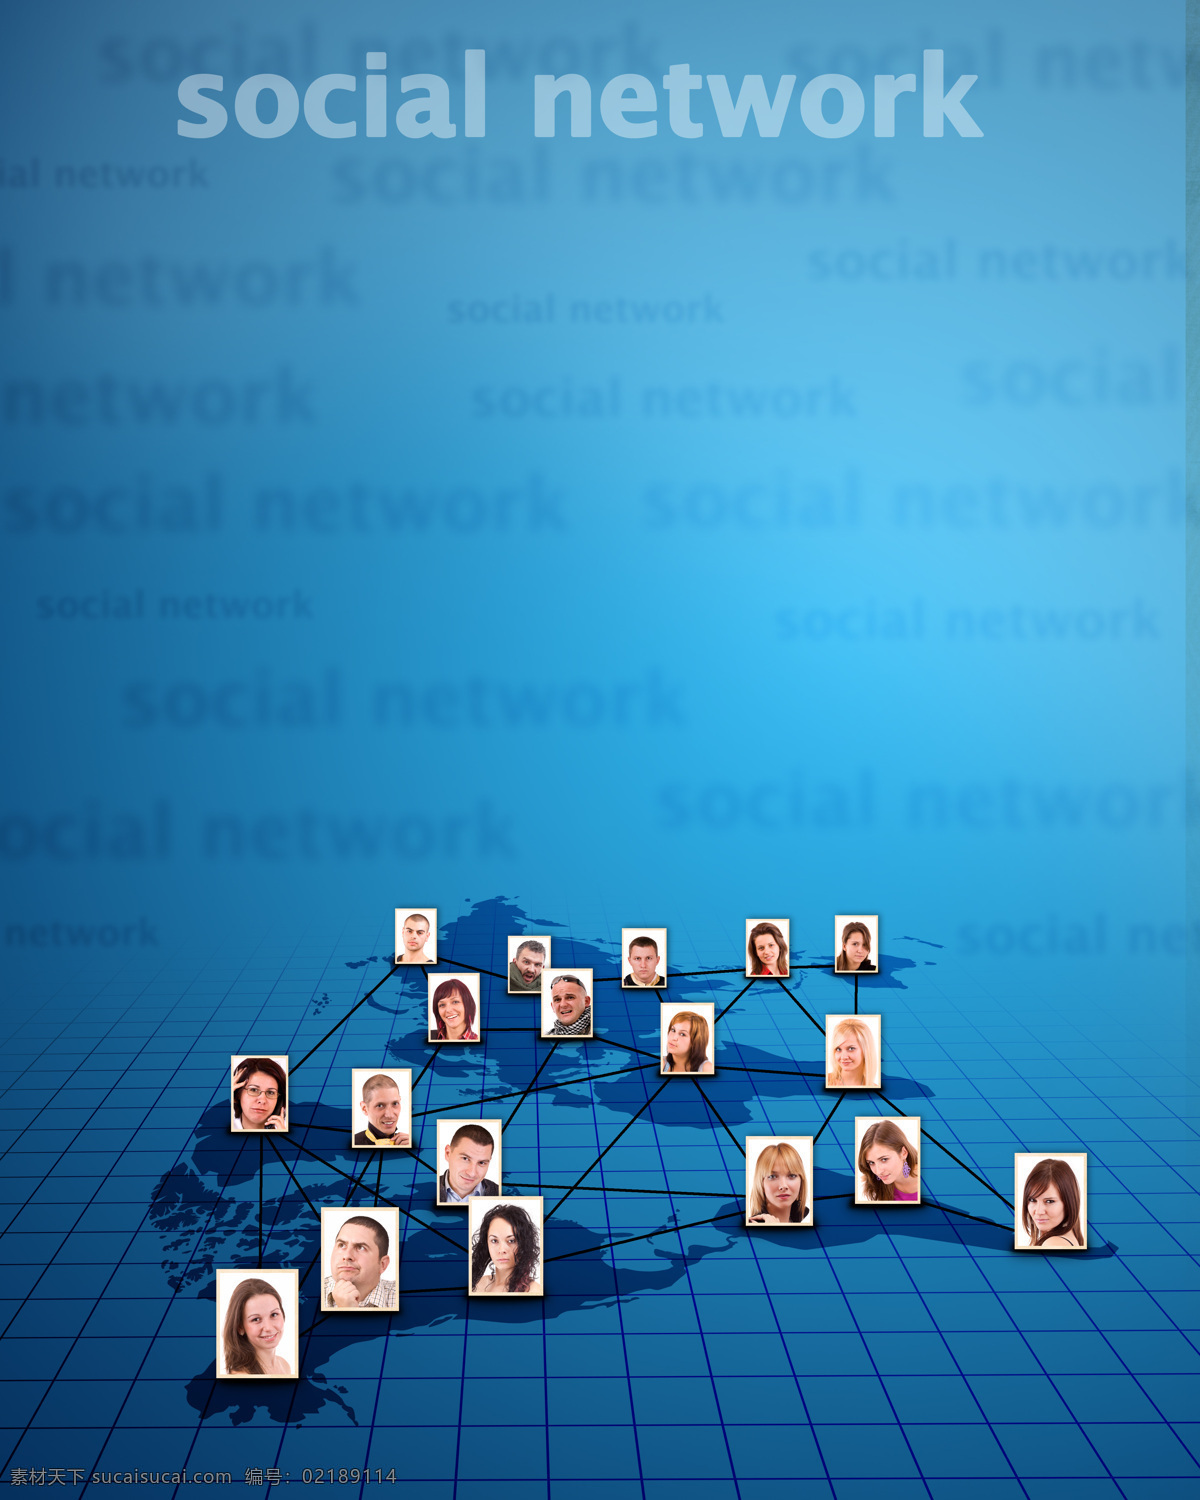 社会 网络 照片 社会网络 高清 图像 社会网络2 hd